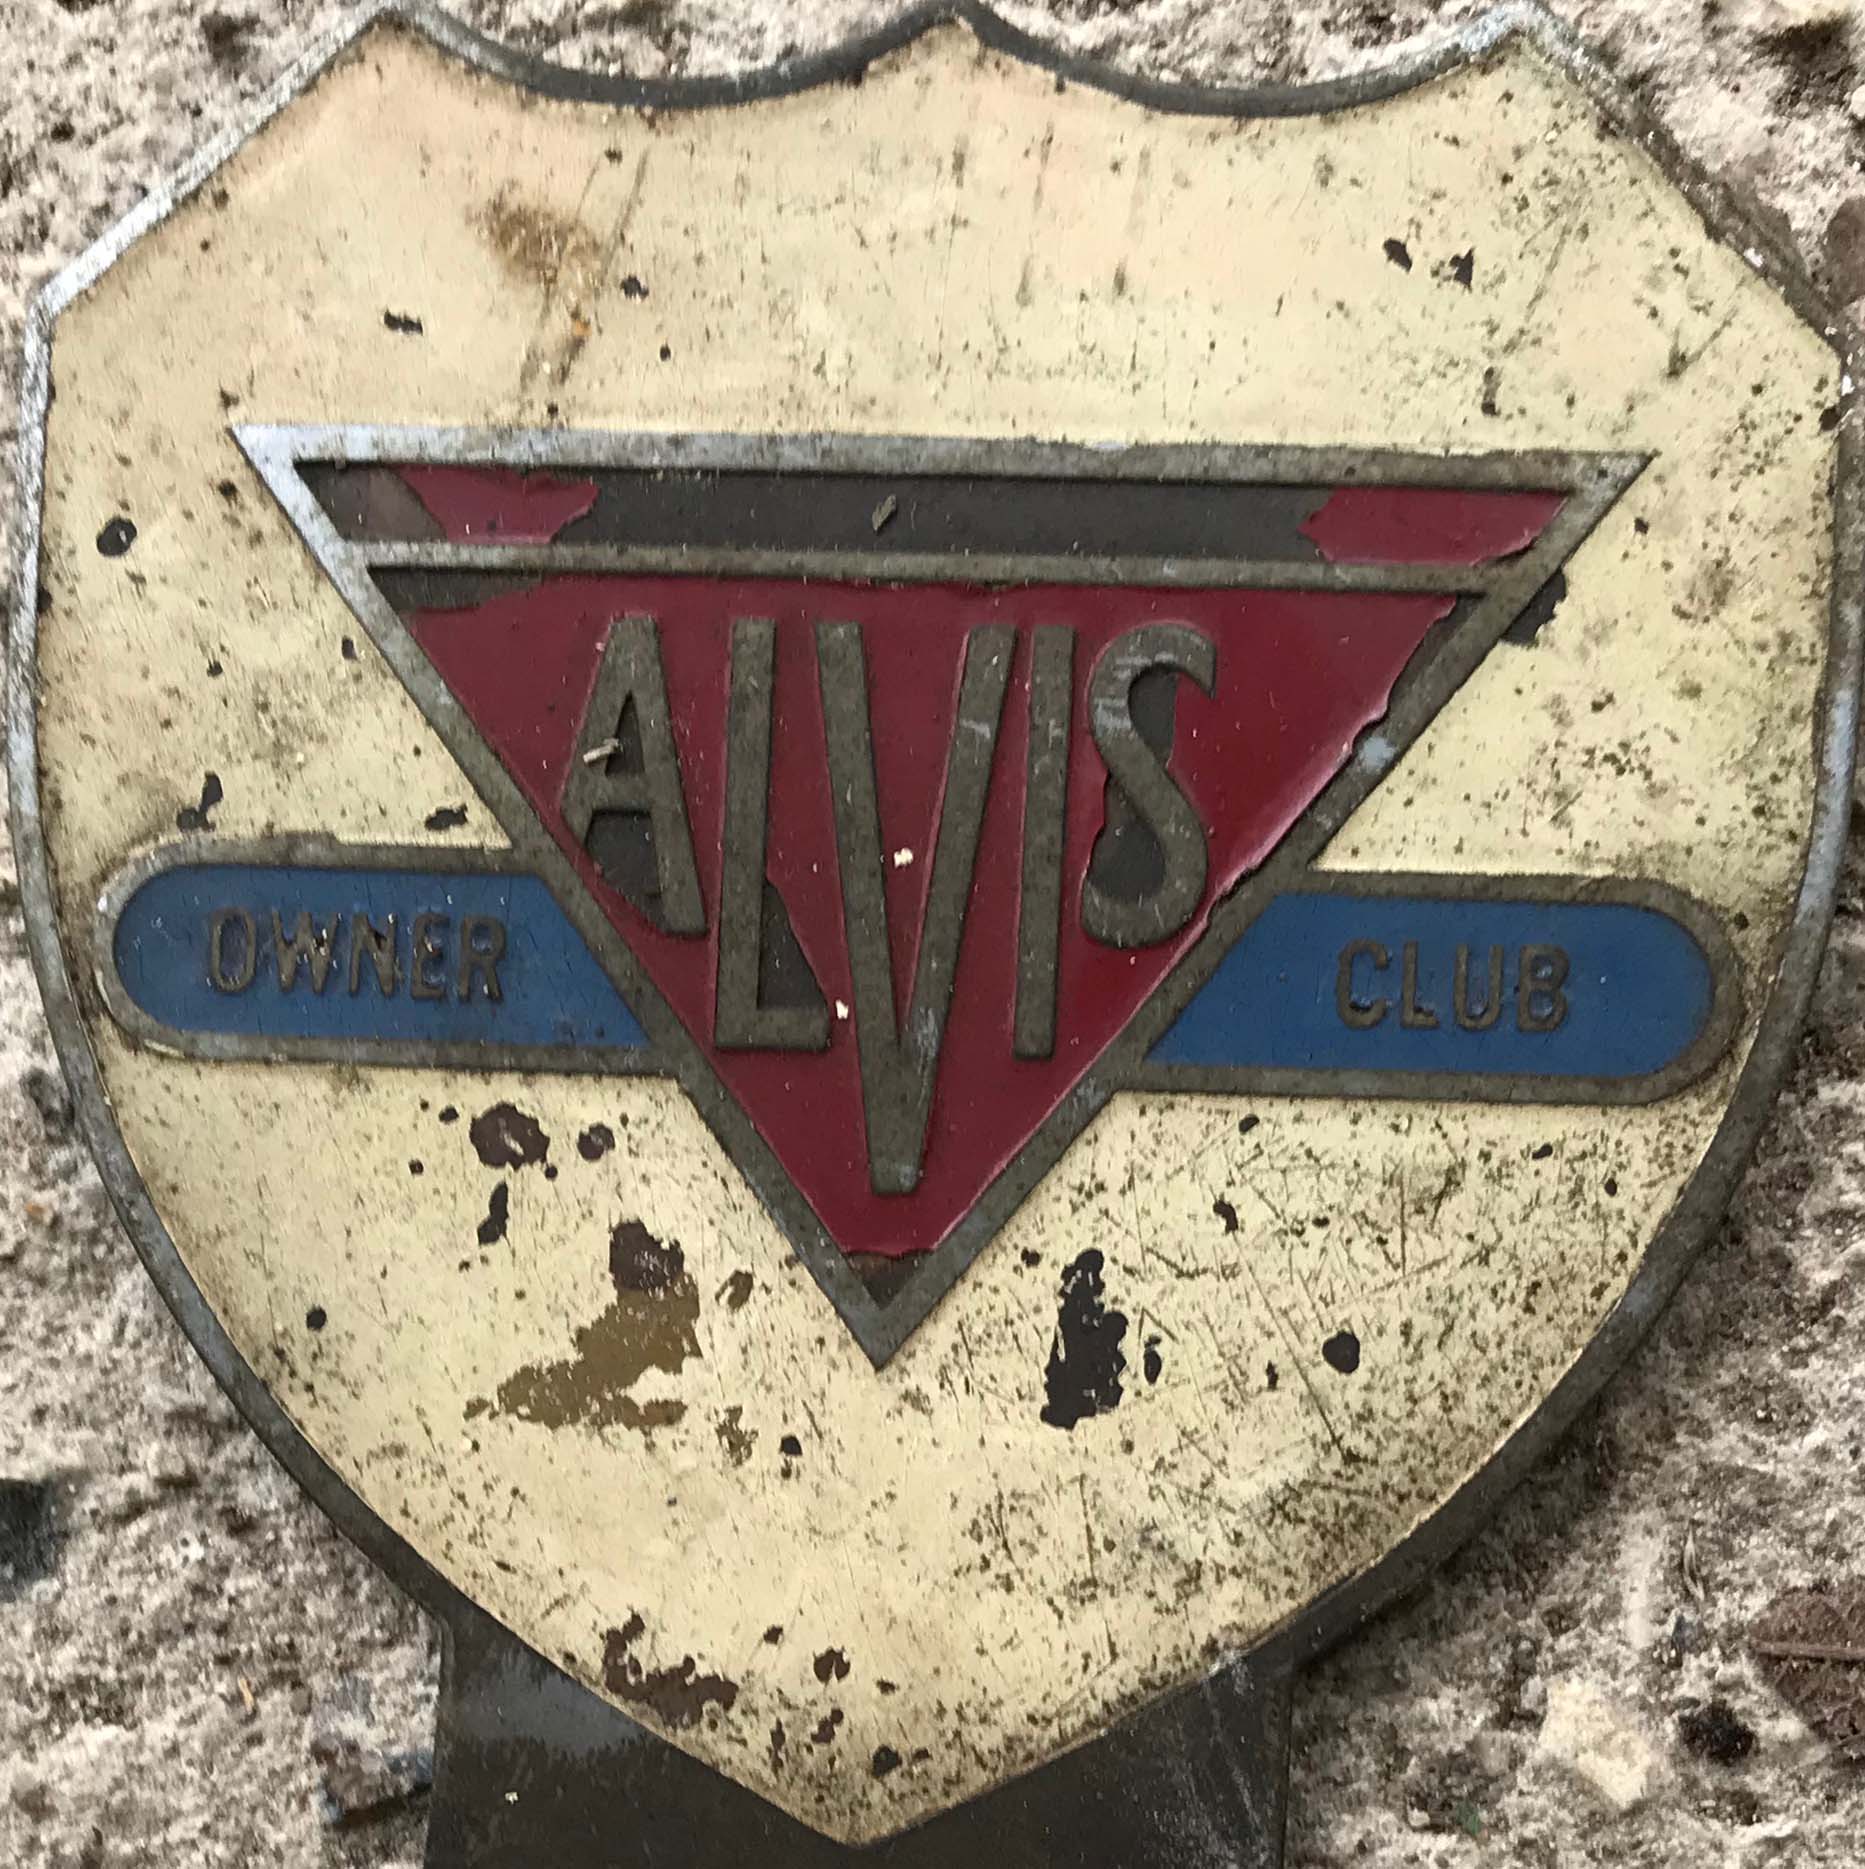 Older Alvis Owners Club Badge